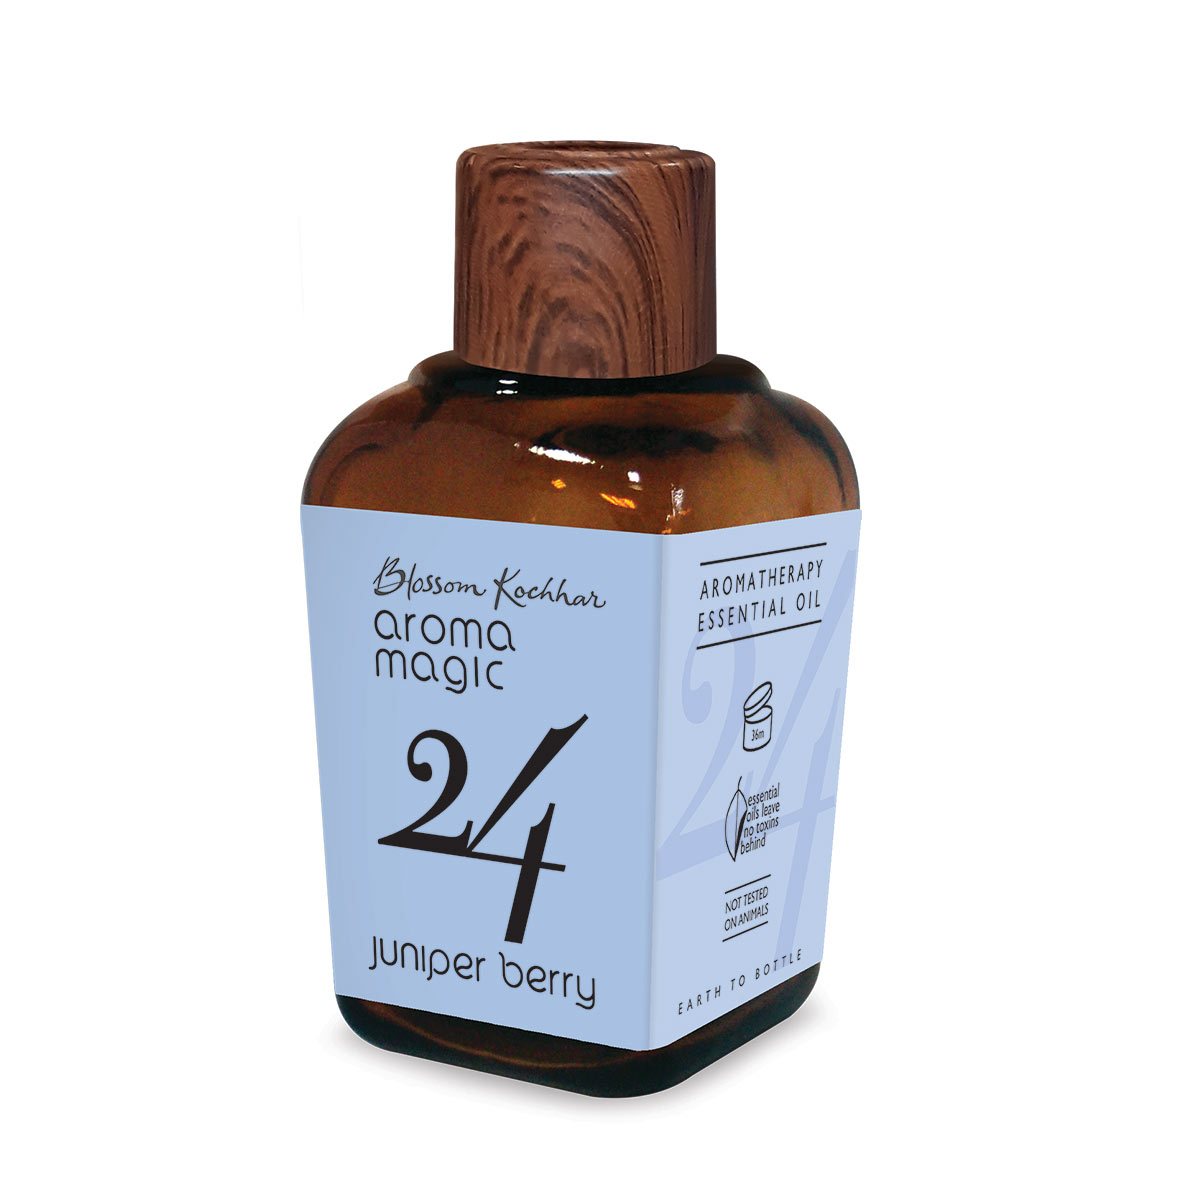 Aroma Magic Juniper Berry oil